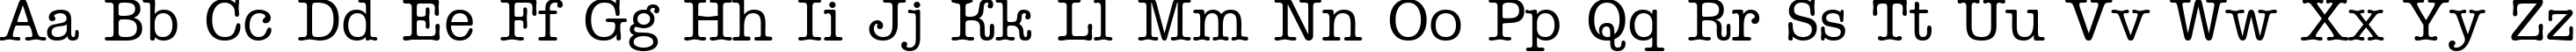 Пример написания английского алфавита шрифтом a_OldTyper